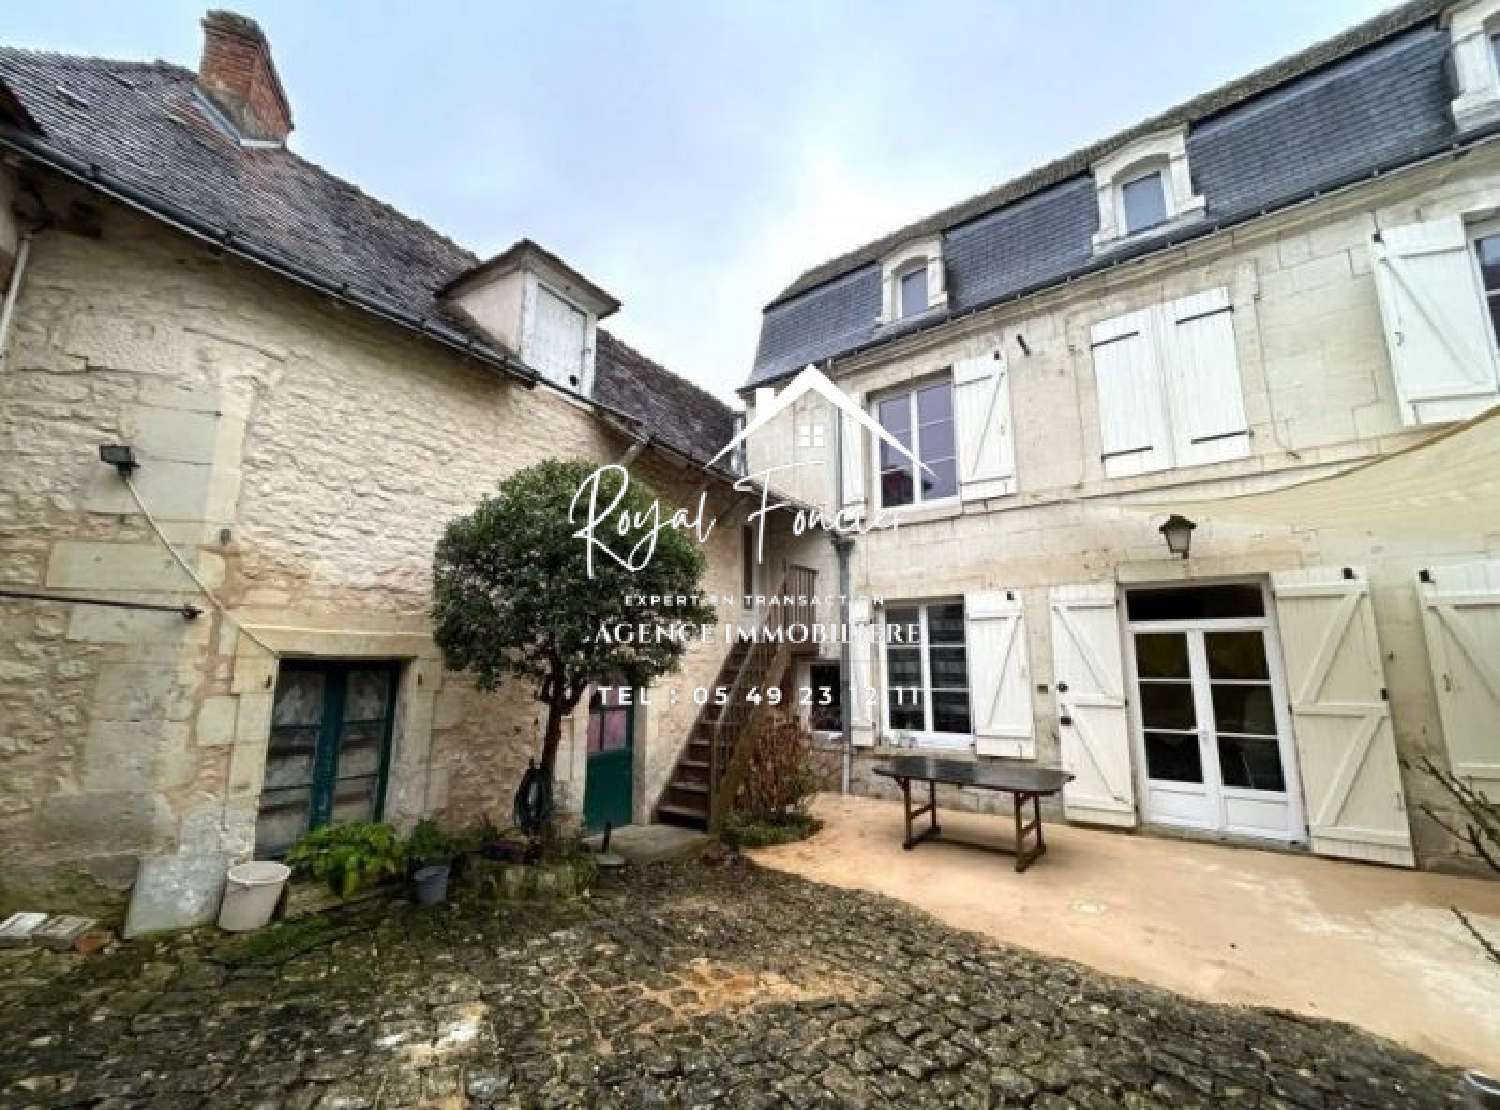  for sale house Preuilly-sur-Claise Indre-et-Loire 2